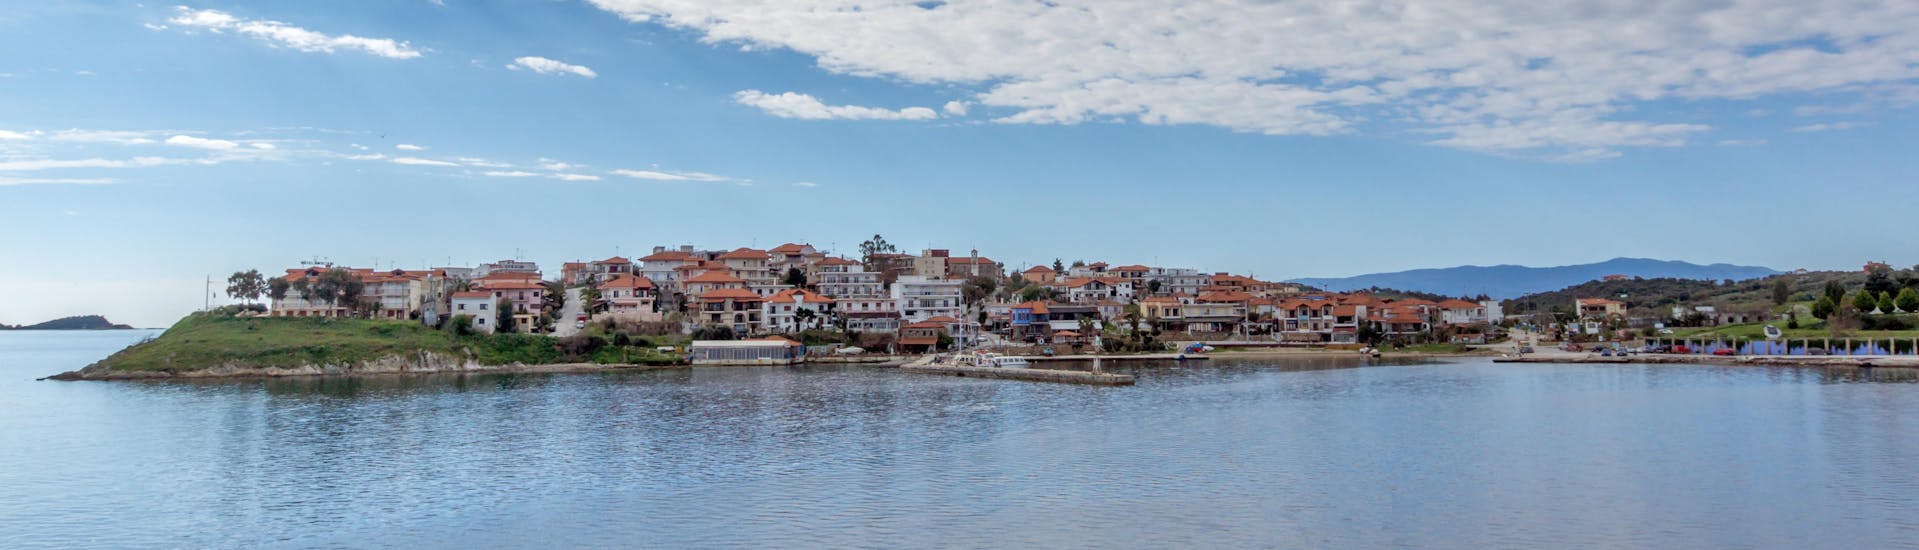 Blick auf die Küste und das Dorf während einer Bootsfahrt zur Insel Ammouliani.